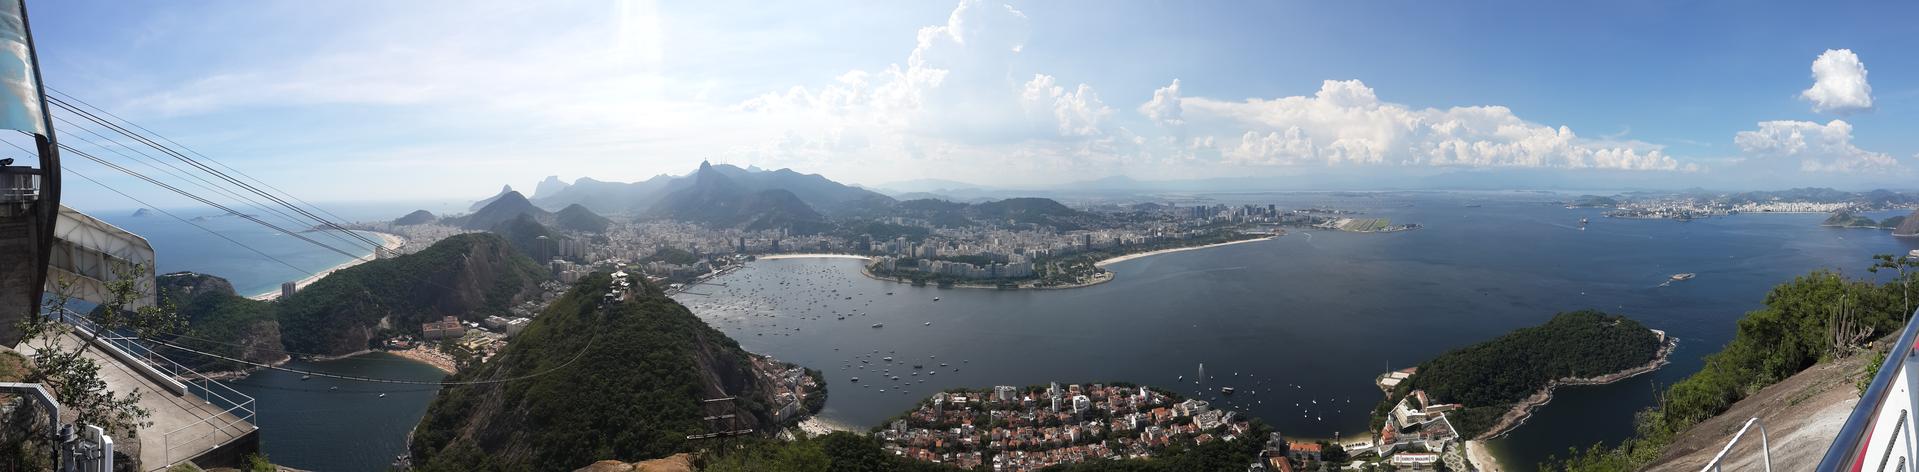 Sugarloaf Mountain Panorama - Rio de Janeiro.